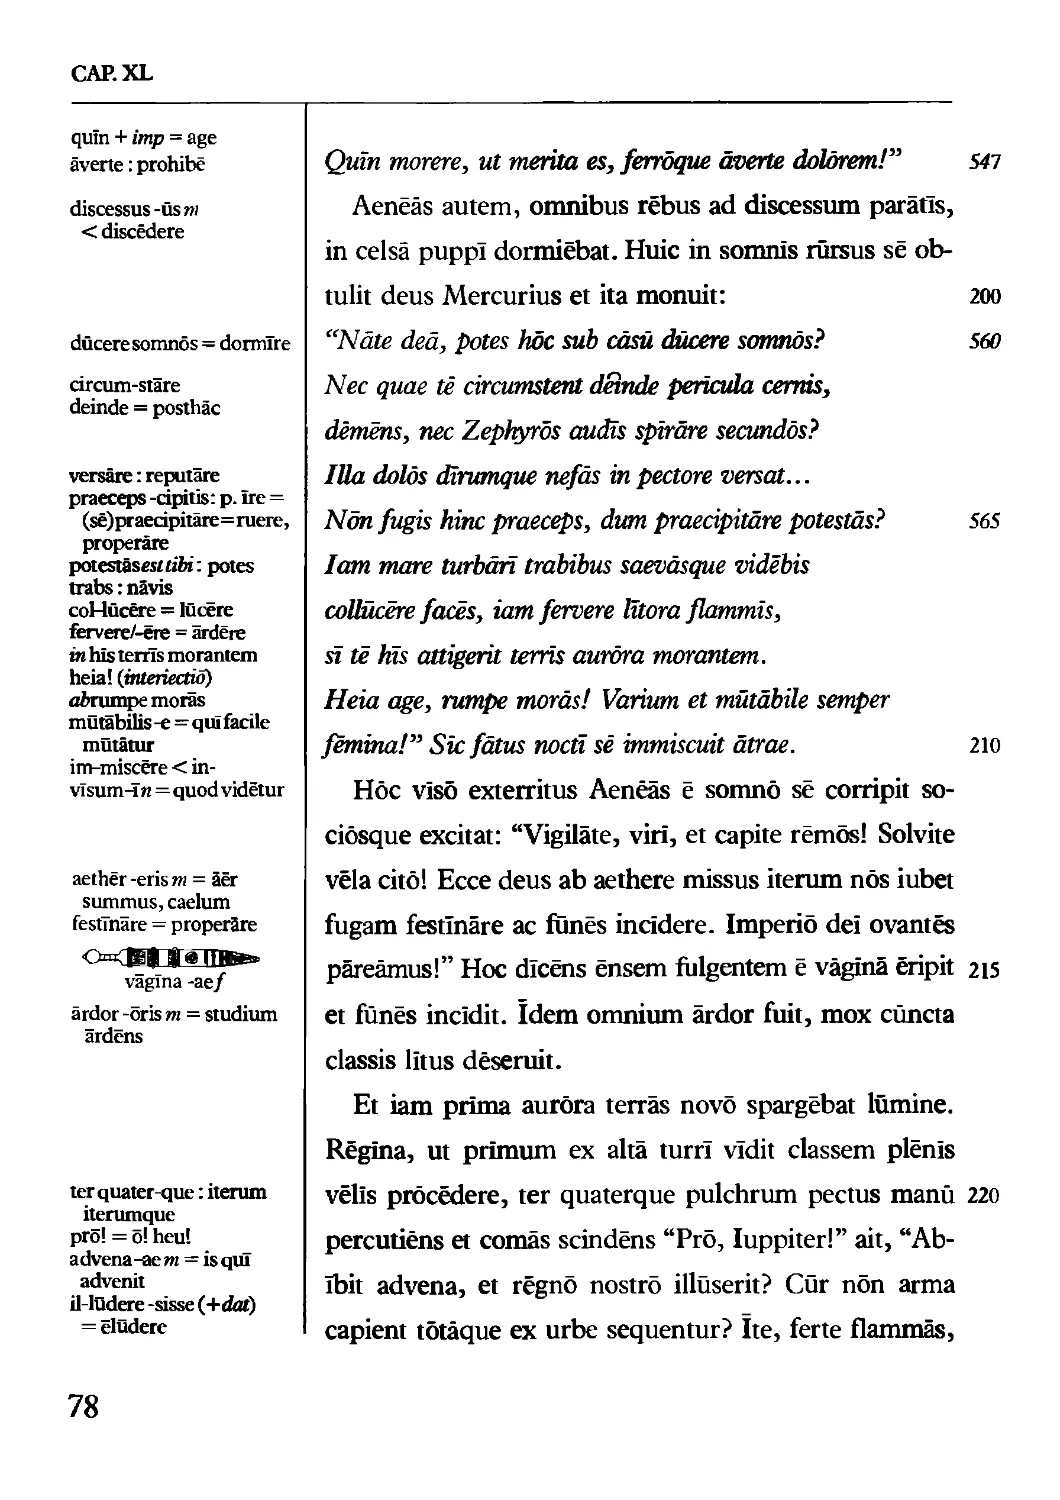 Lēctiō IV: v. 218–299